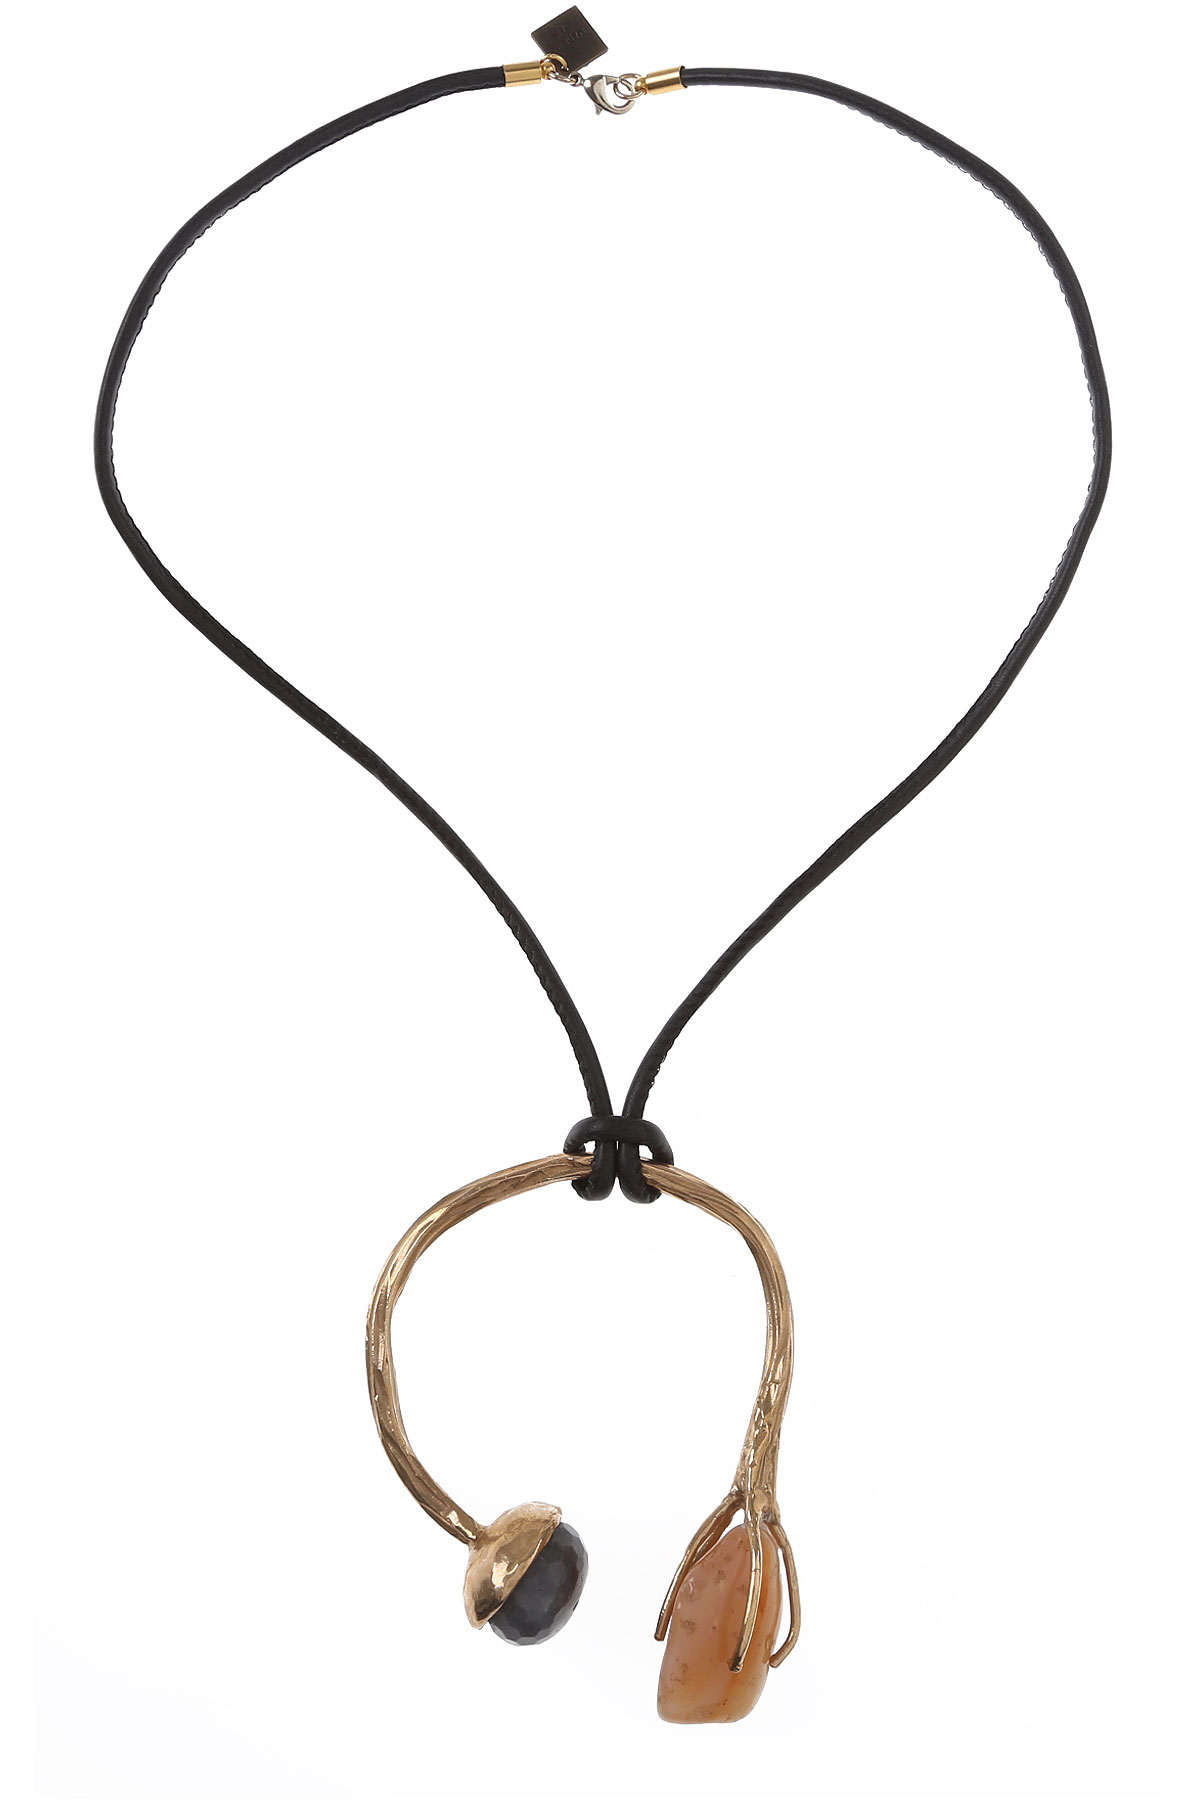 Iron By Miriam Nori Halskette für Damen Günstig im Sale, Grau, Bronze, 2017